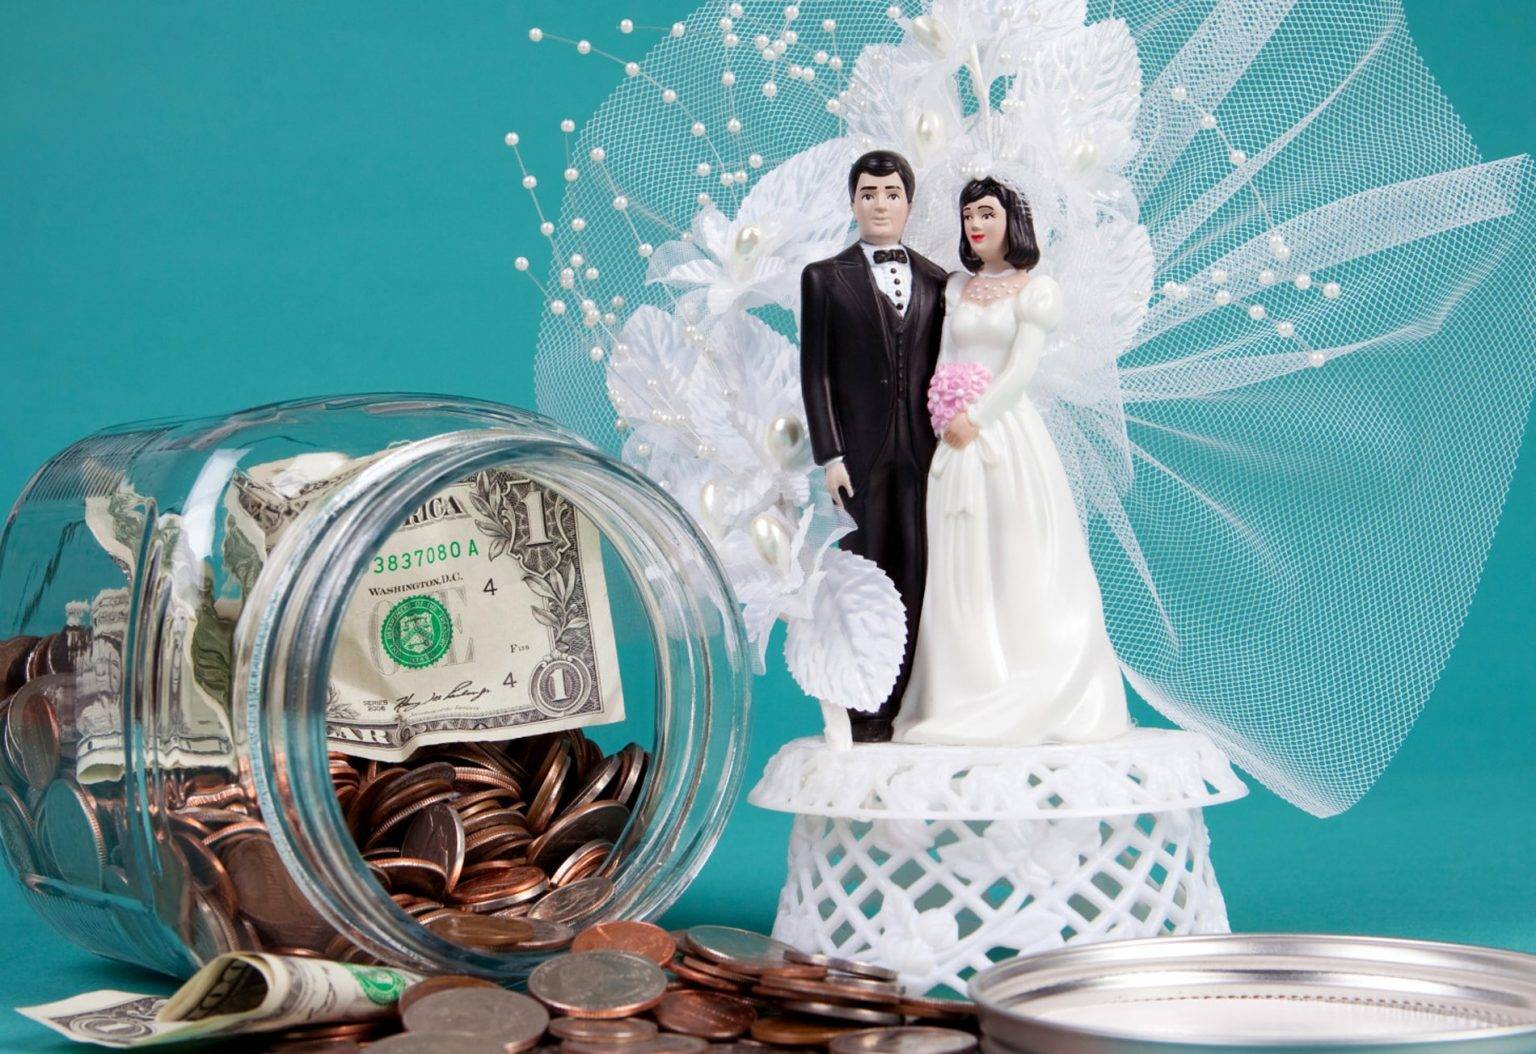 Свадьба в кредит — стоит ли брать кредит на свадьбу? | bankstoday